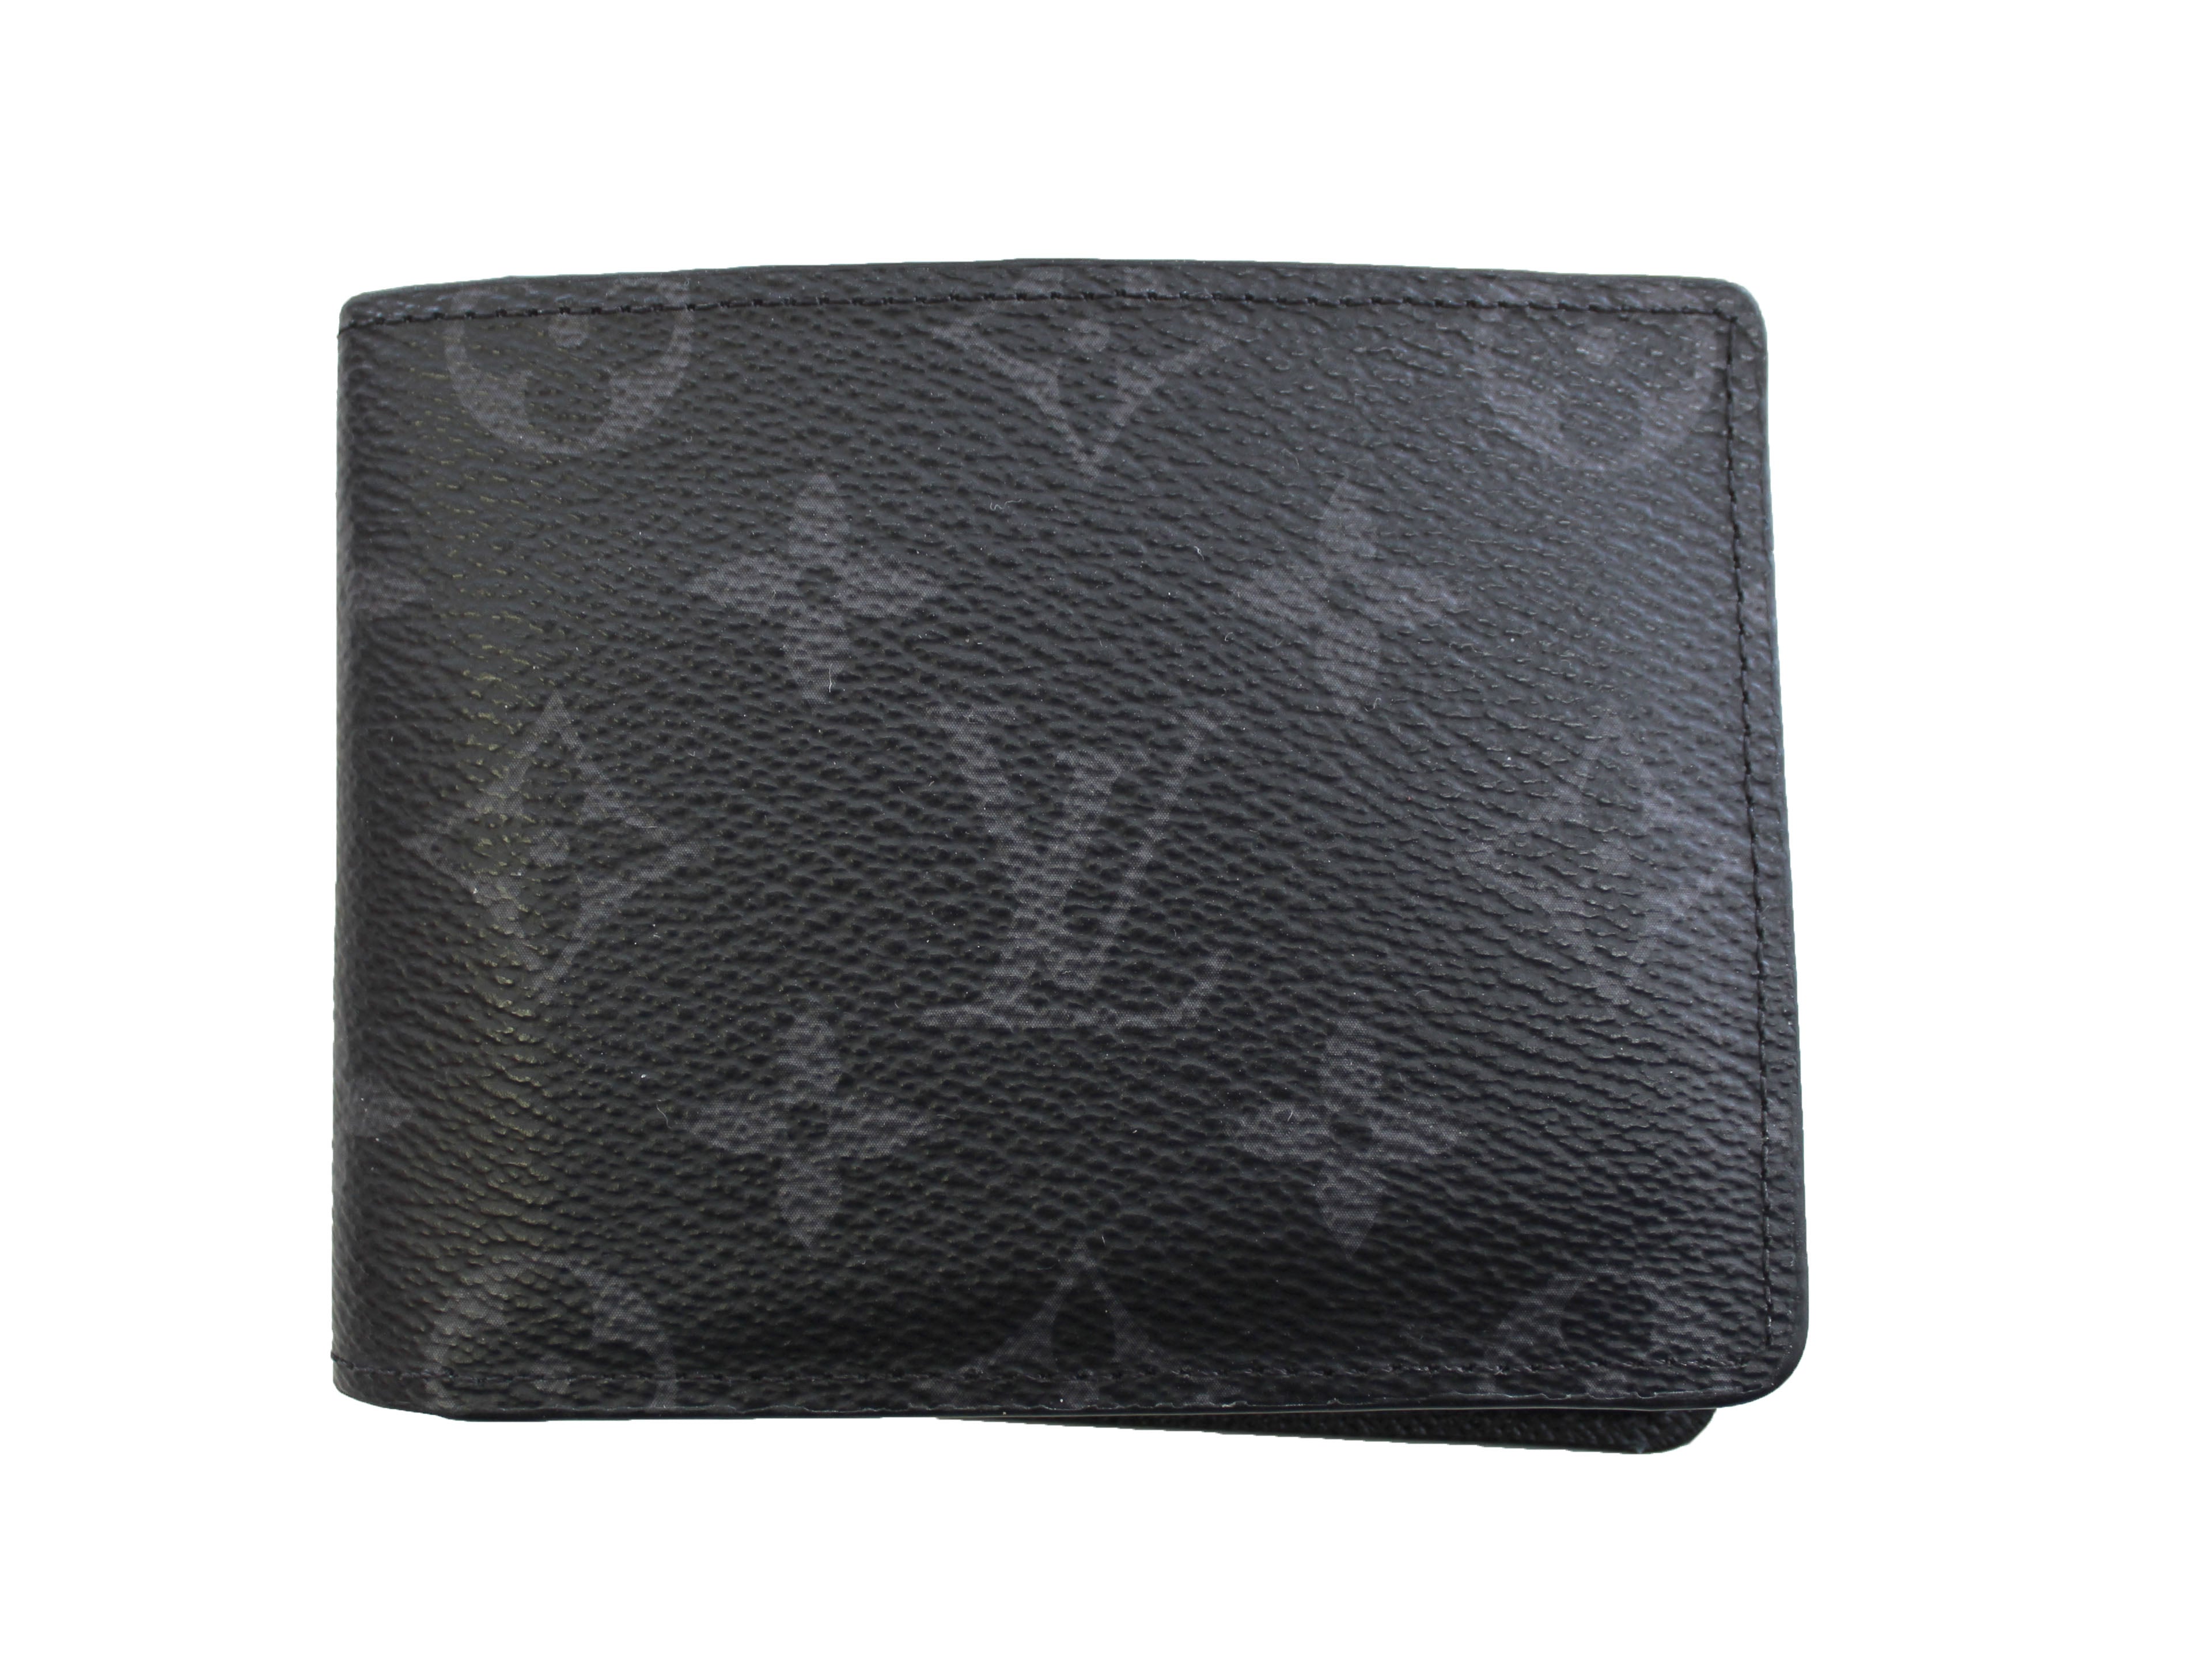 Authentic Louis Vuitton Grey Black Monogram Eclipse Canvas Men's Multiple Wallet